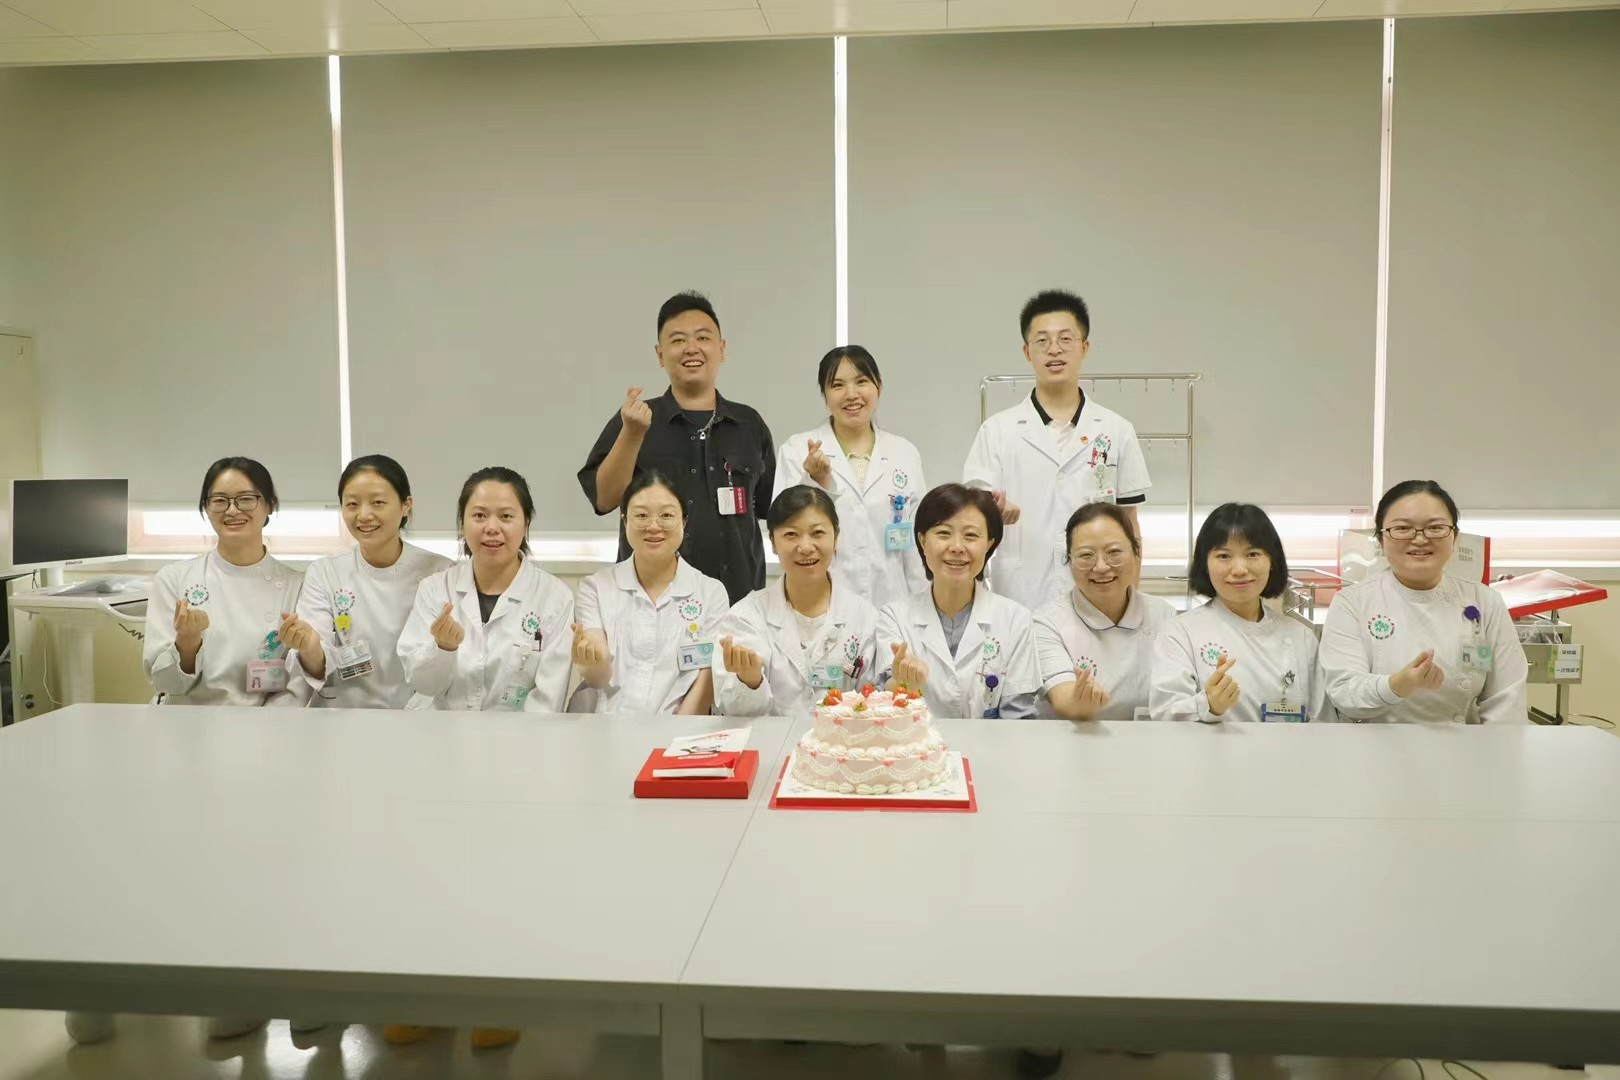 第六届“中国医师节”—重症医学科祝贺全体医师节日快乐！